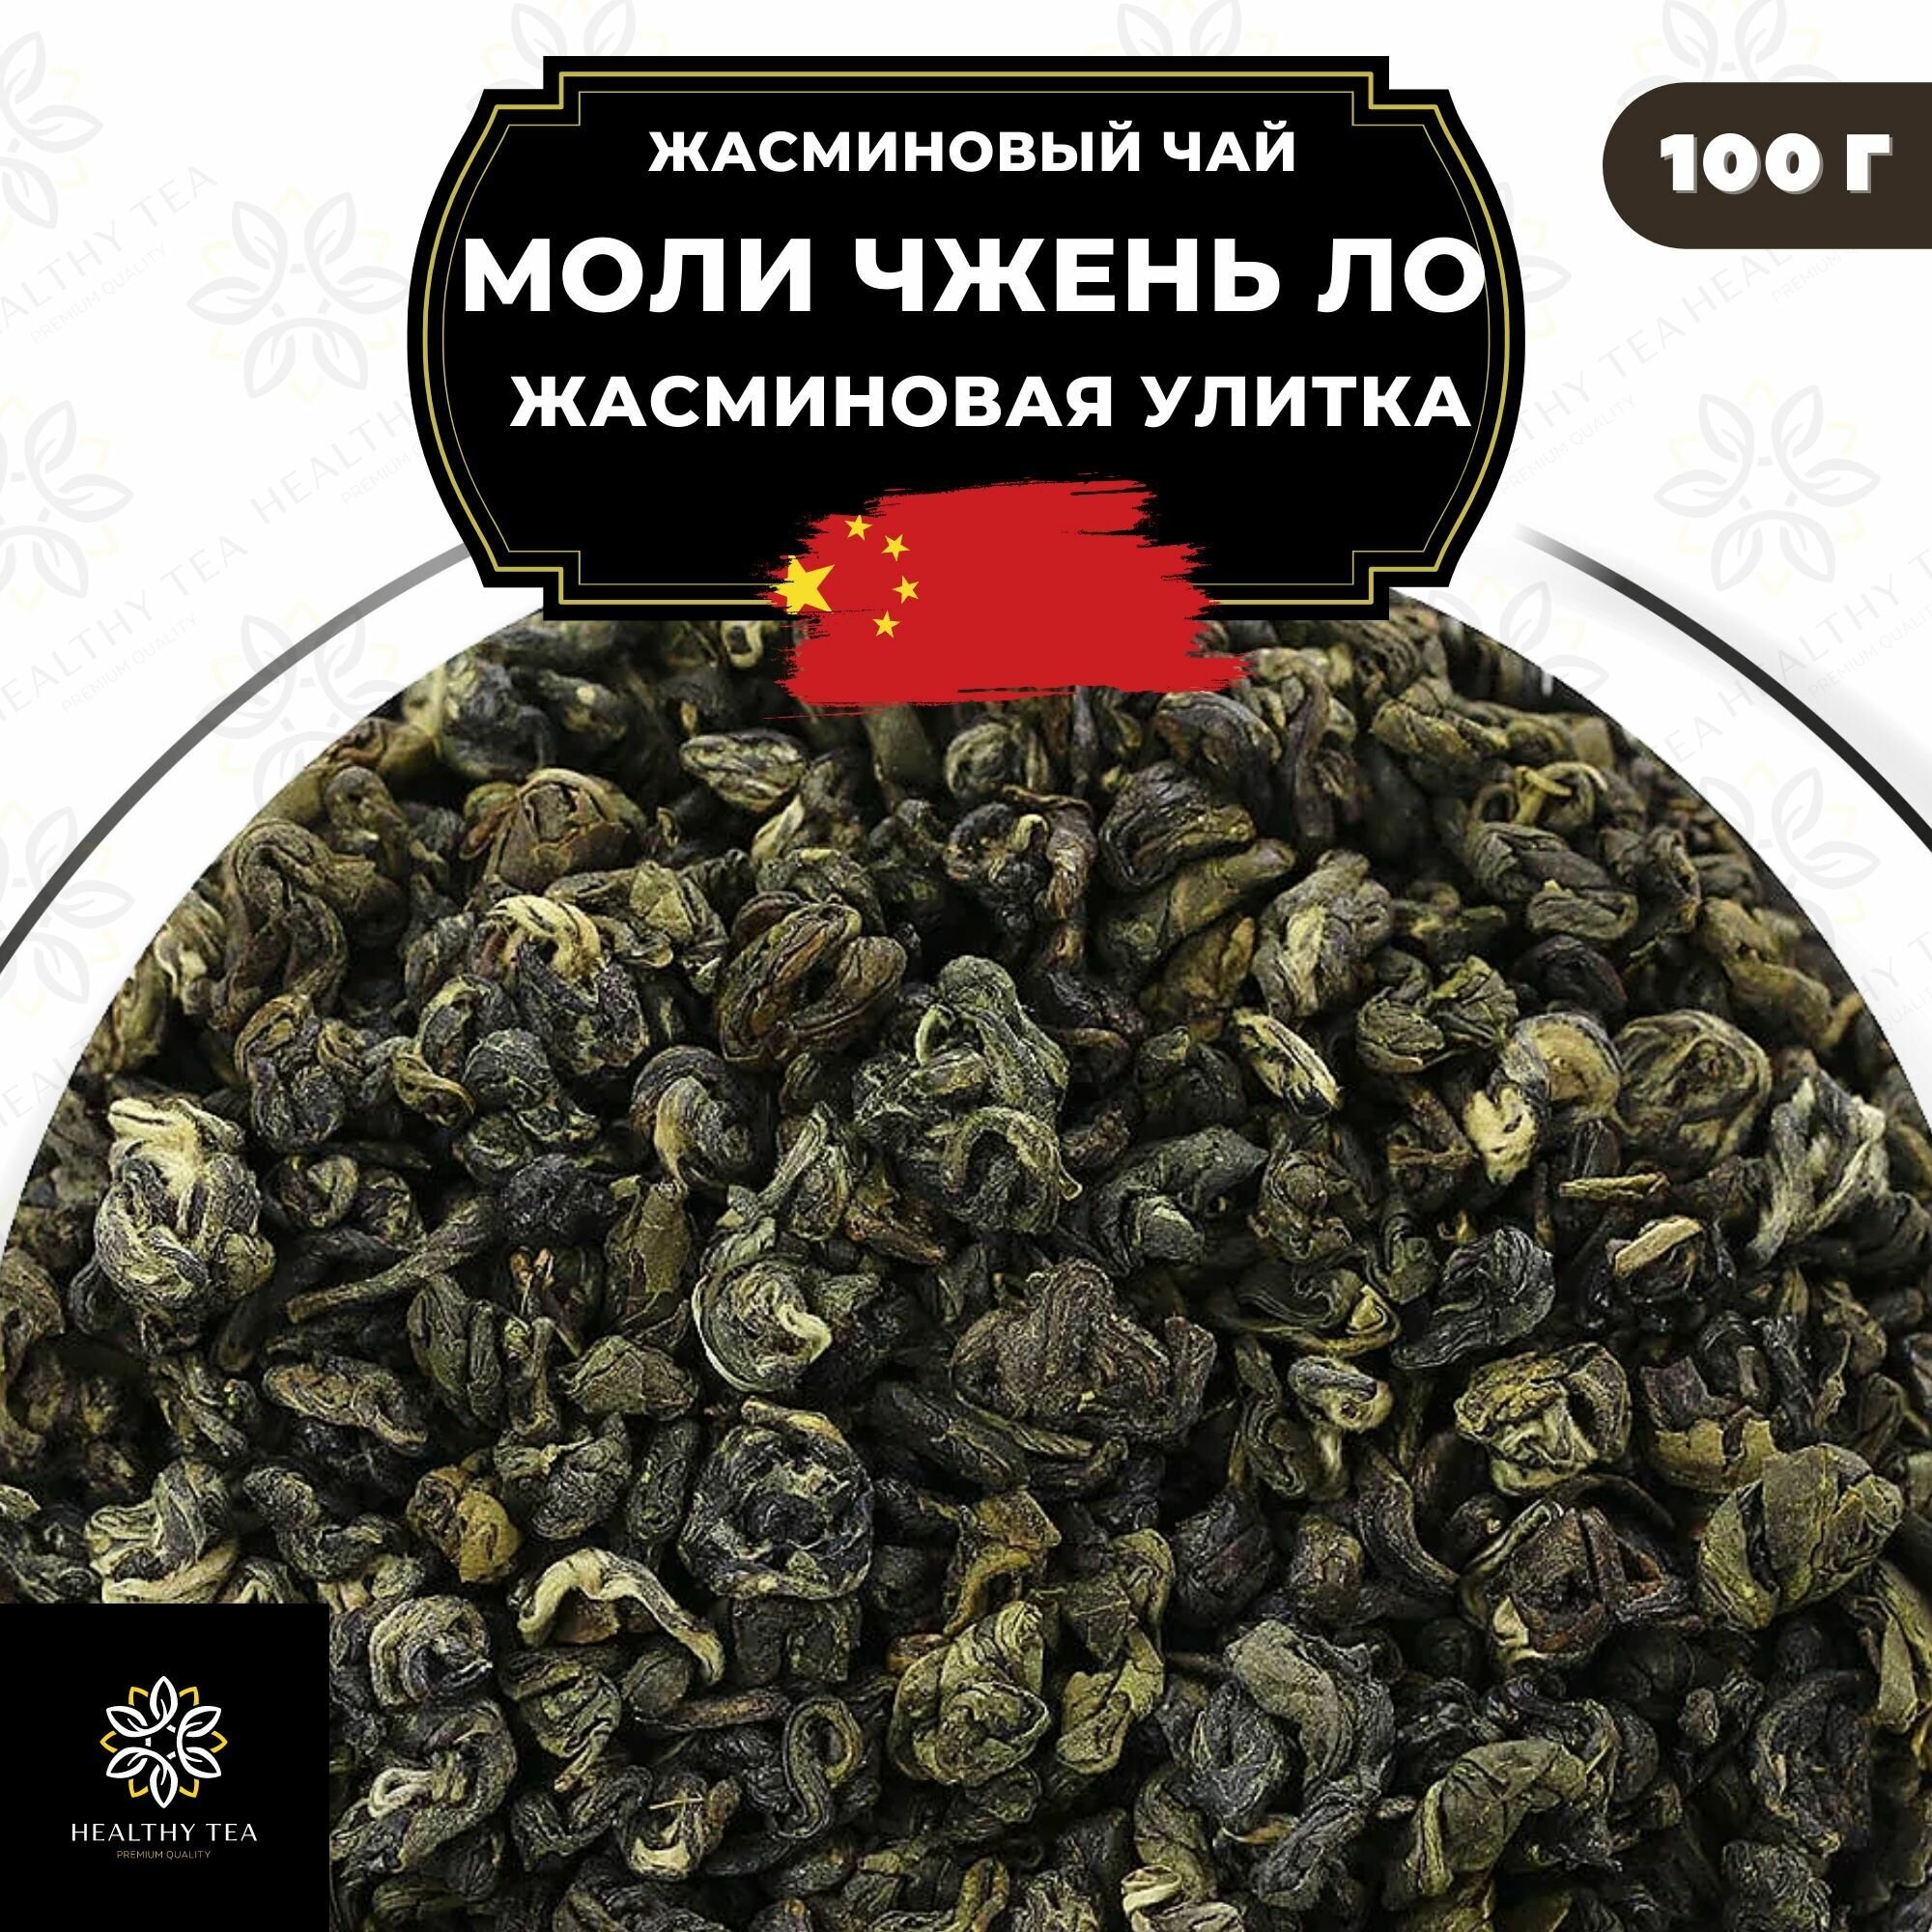 Китайский жасминовый чай Моли Чжень Ло (Жасминовая улитка) Полезный чай / HEALTHY TEA, 100 г